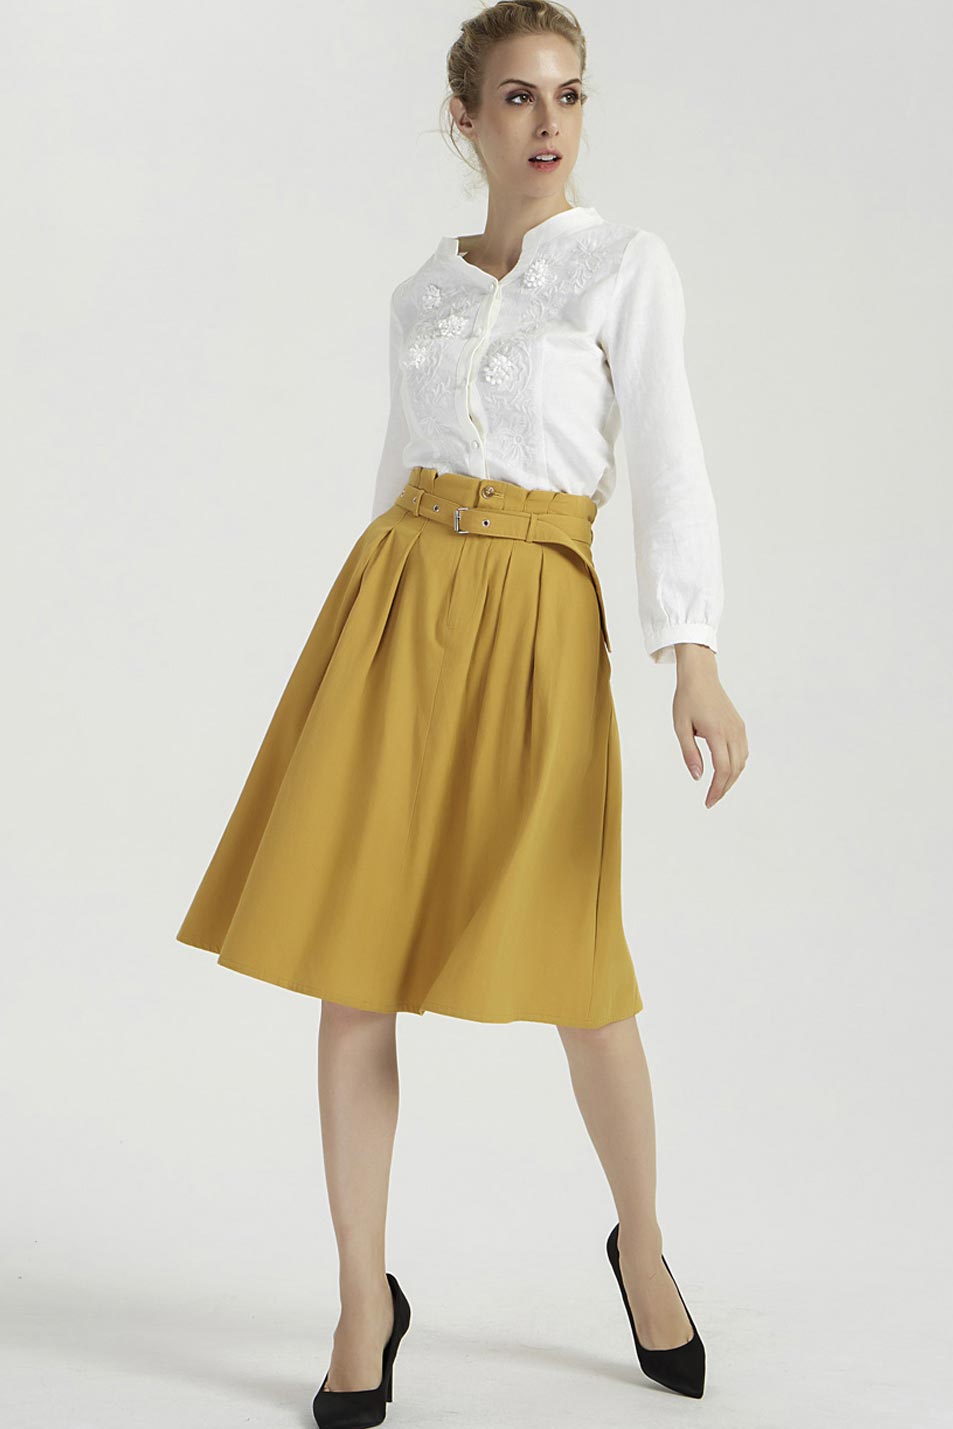 knee length yellow linen skirt, summer short skirt 2039#